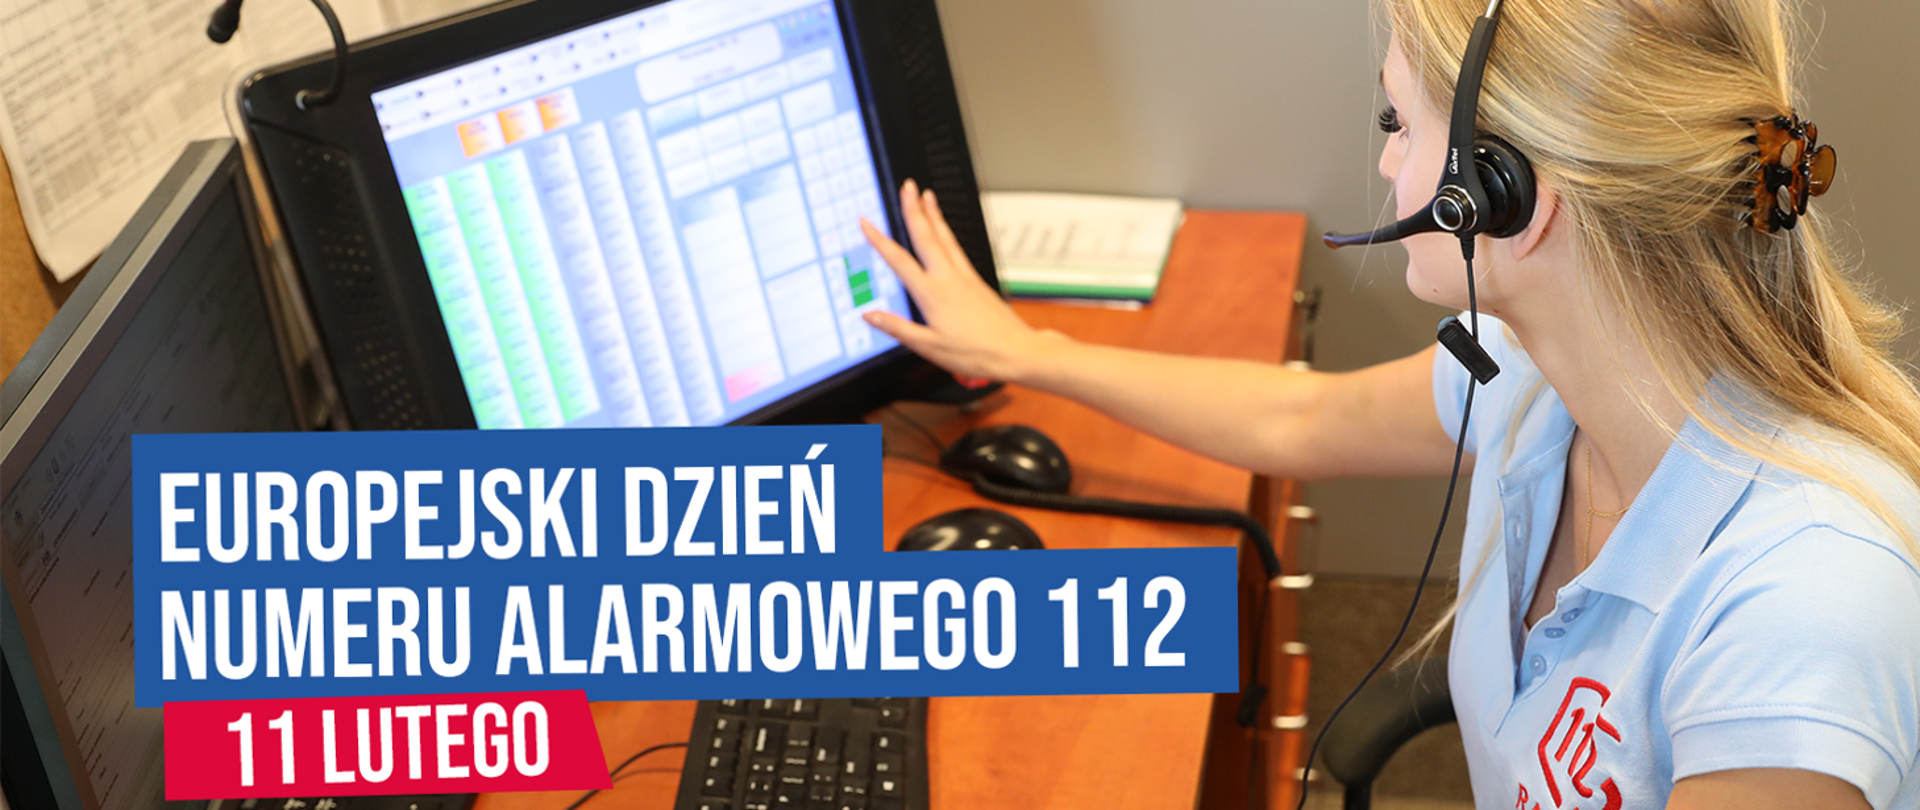 Dyspozytorka numeru alarmowego 112 siedzi przy biurku przed ekranem, palcami prawej ręki dotyka ekranu pulpitu dyspozytorskiego.